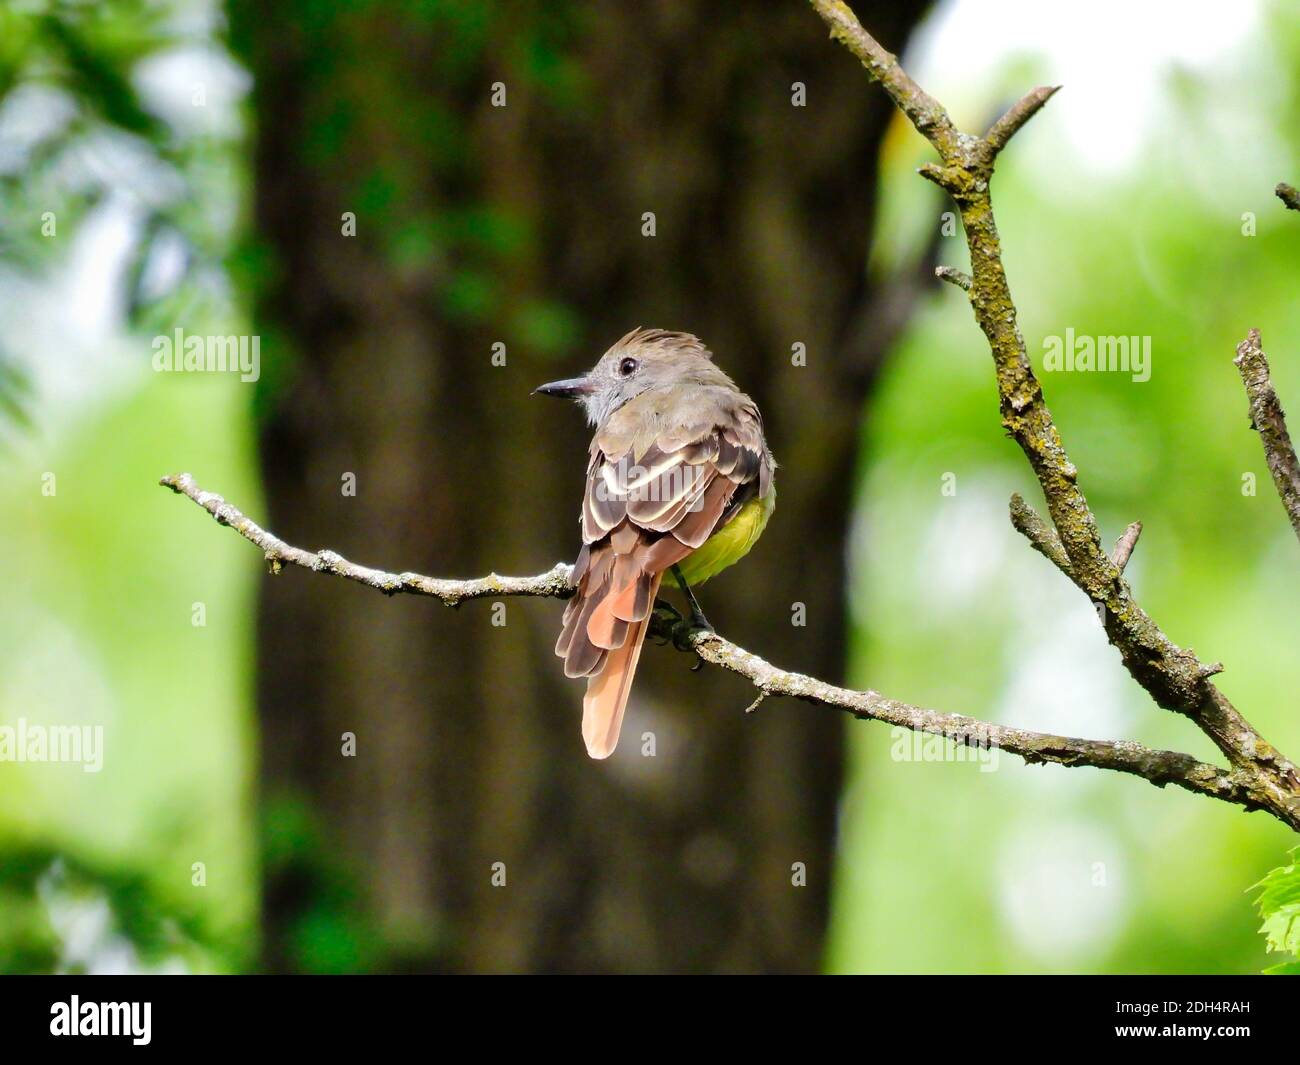 Flycatcher Bird sitzt allein auf einem schmalen Baum Zweig suchen Über der Schulter mit einem großen Baumstamm im Hintergrund Stockfoto